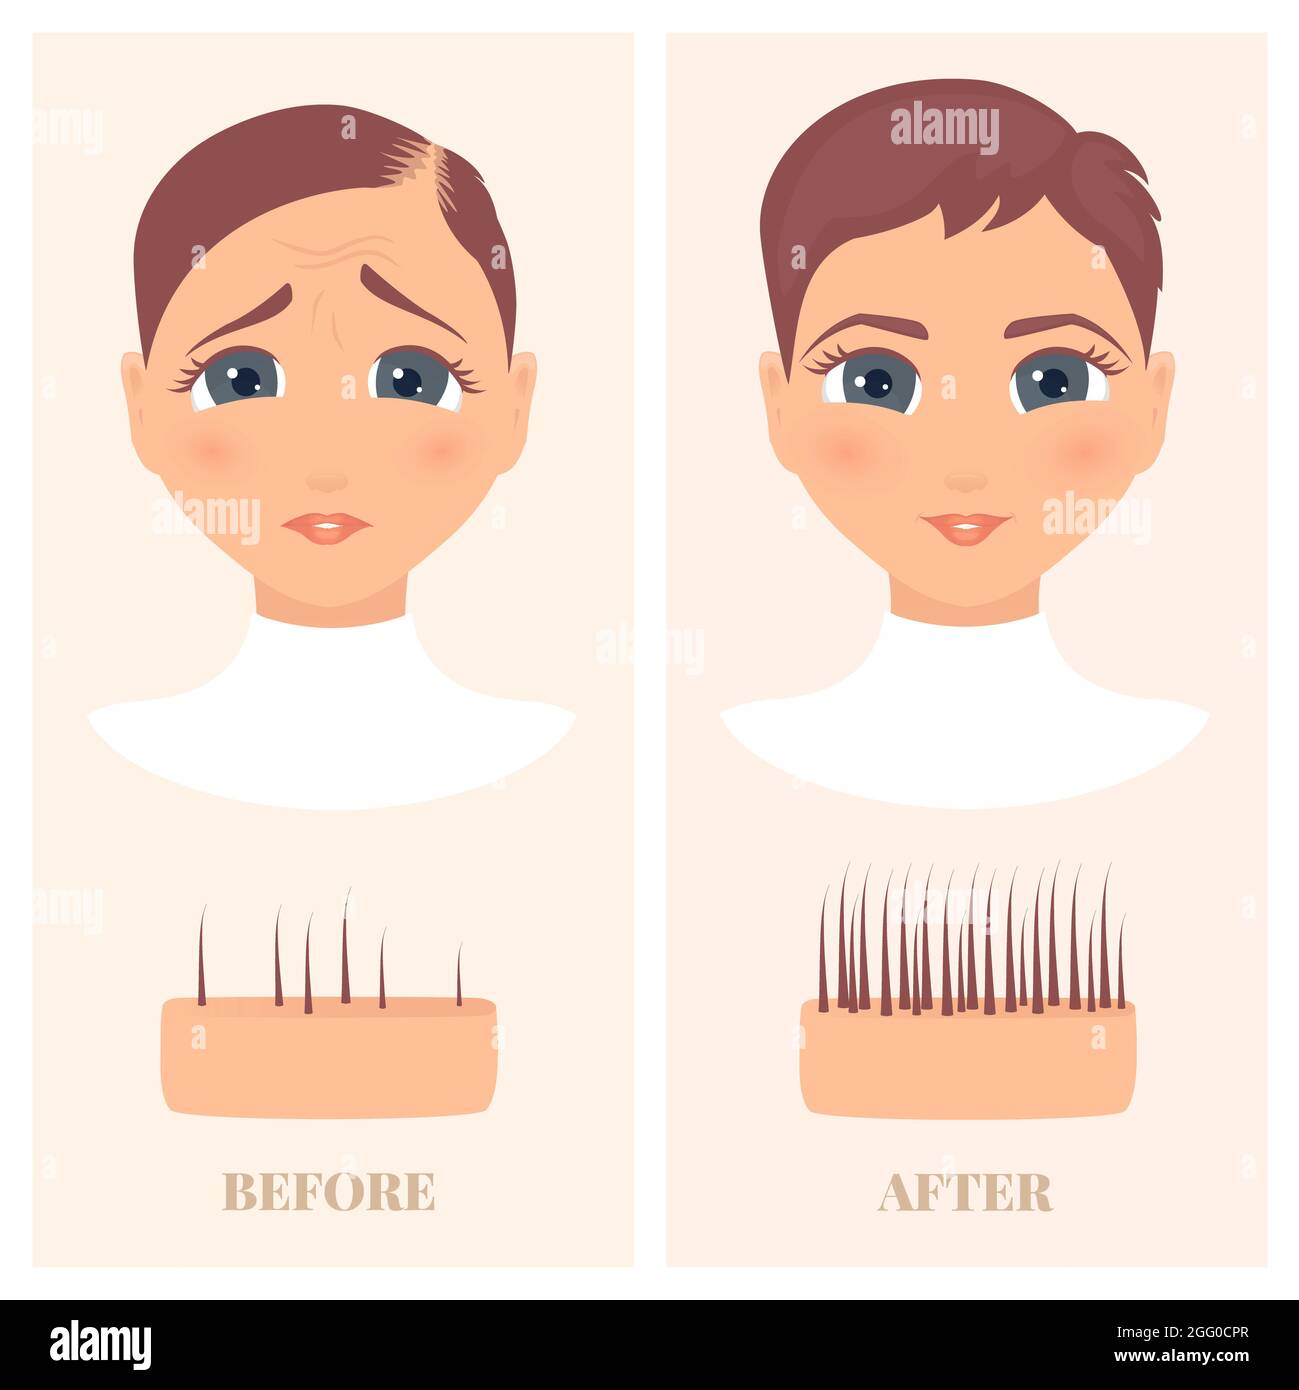 Alopezie Behandlung bei Frauen, Illustration. Frau mit dünner werdendem Haar vor und nach dem Nachwachsen der Haare. Stockfoto